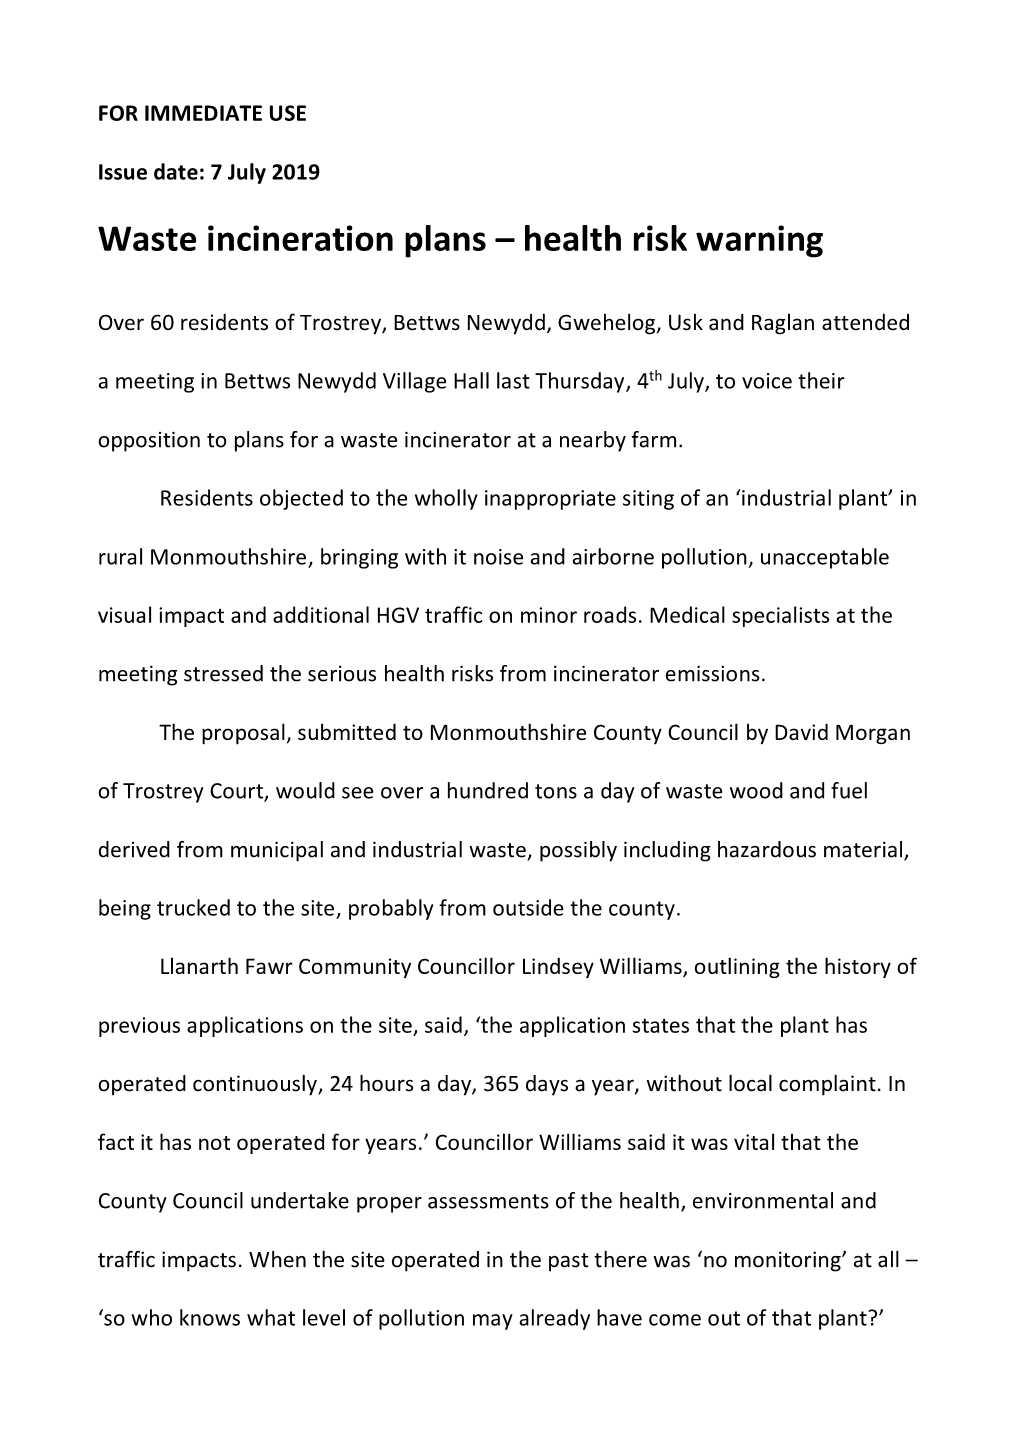 Waste Incineration Plans – Health Risk Warning